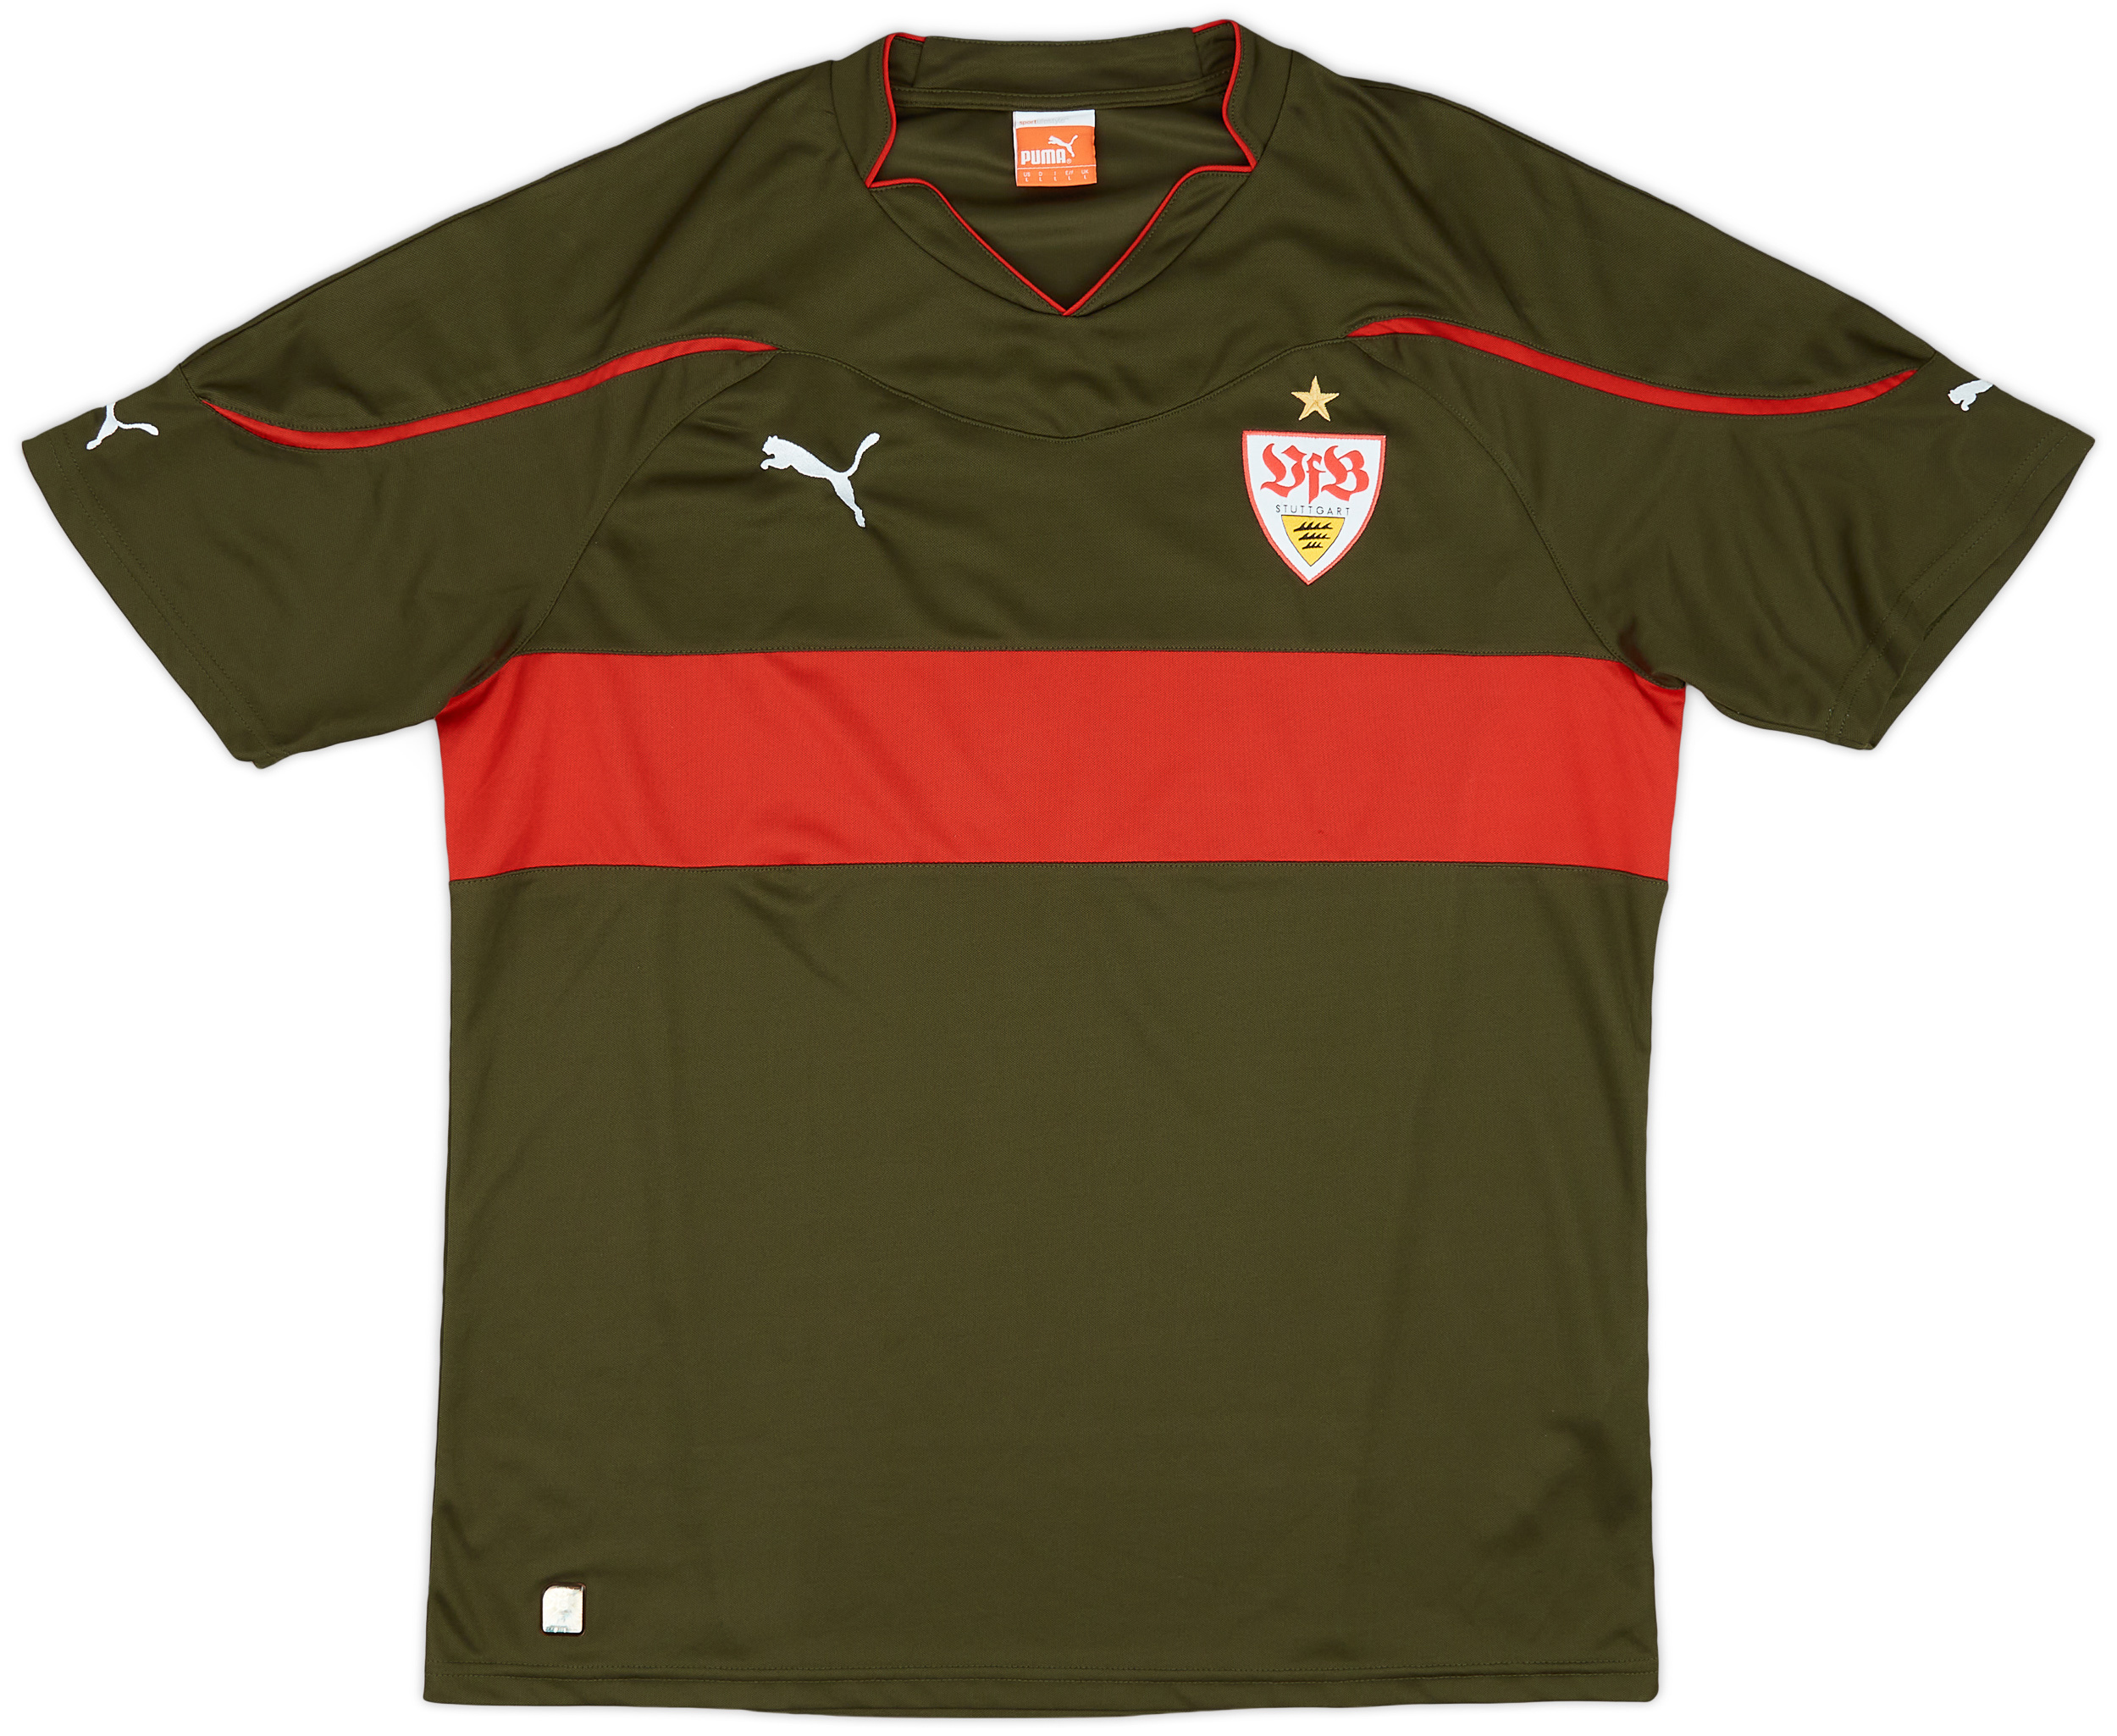 VfB Stuttgart  Third shirt (Original)